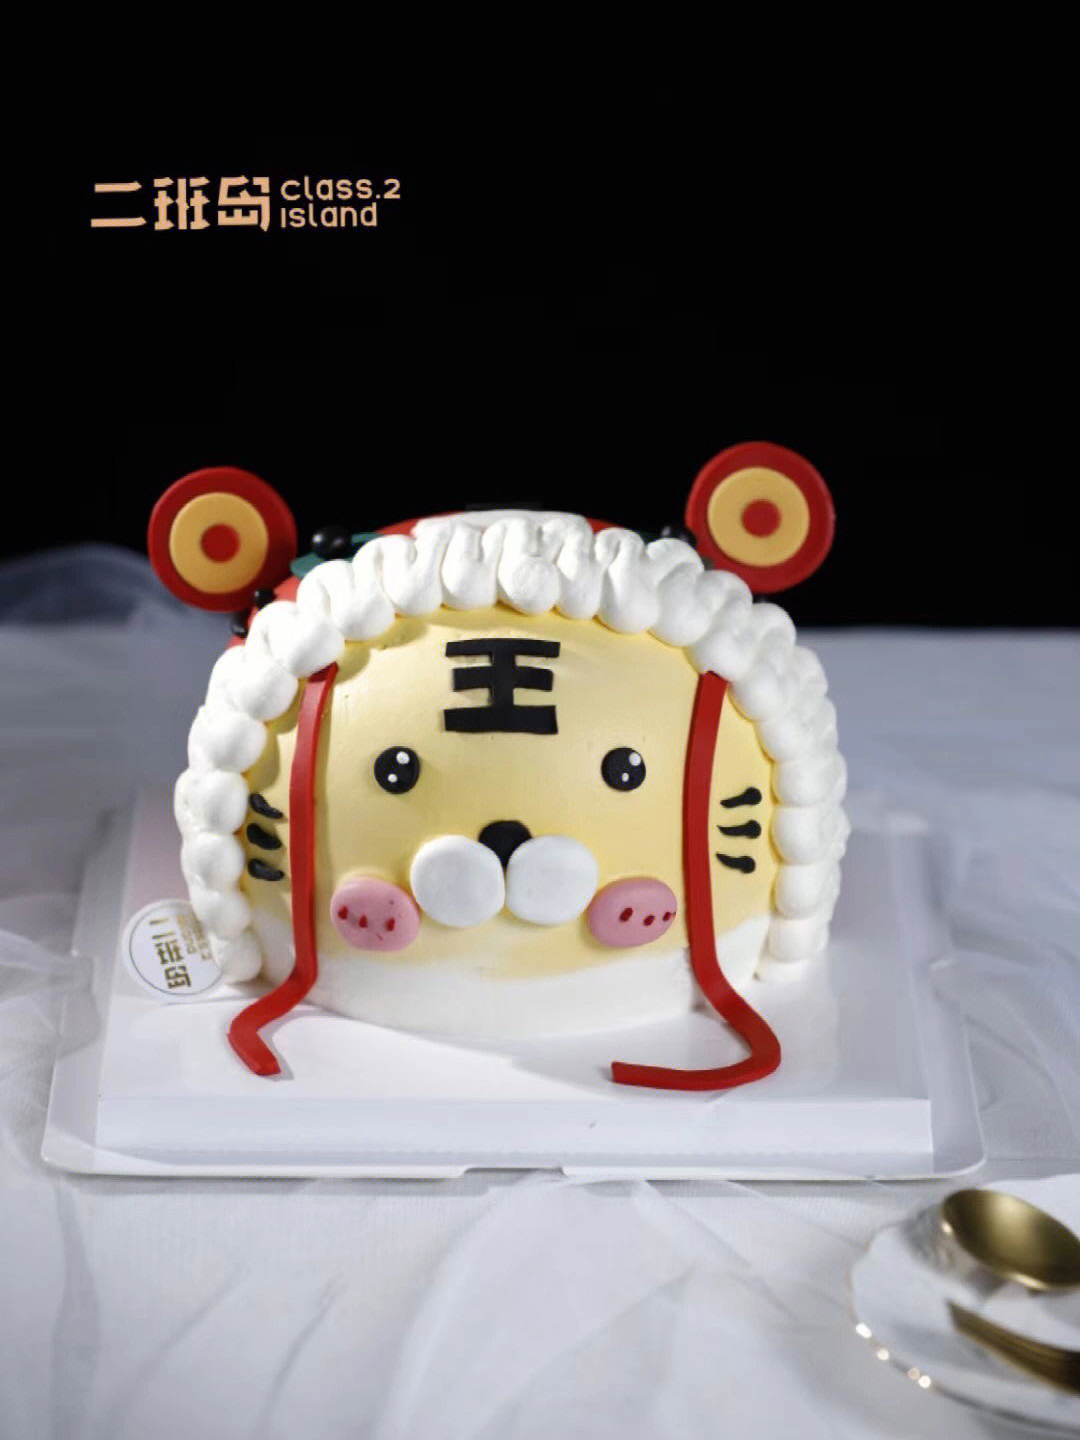 虎年行大运,专为属虎的宝宝们量身定制的虎年生日蛋糕!